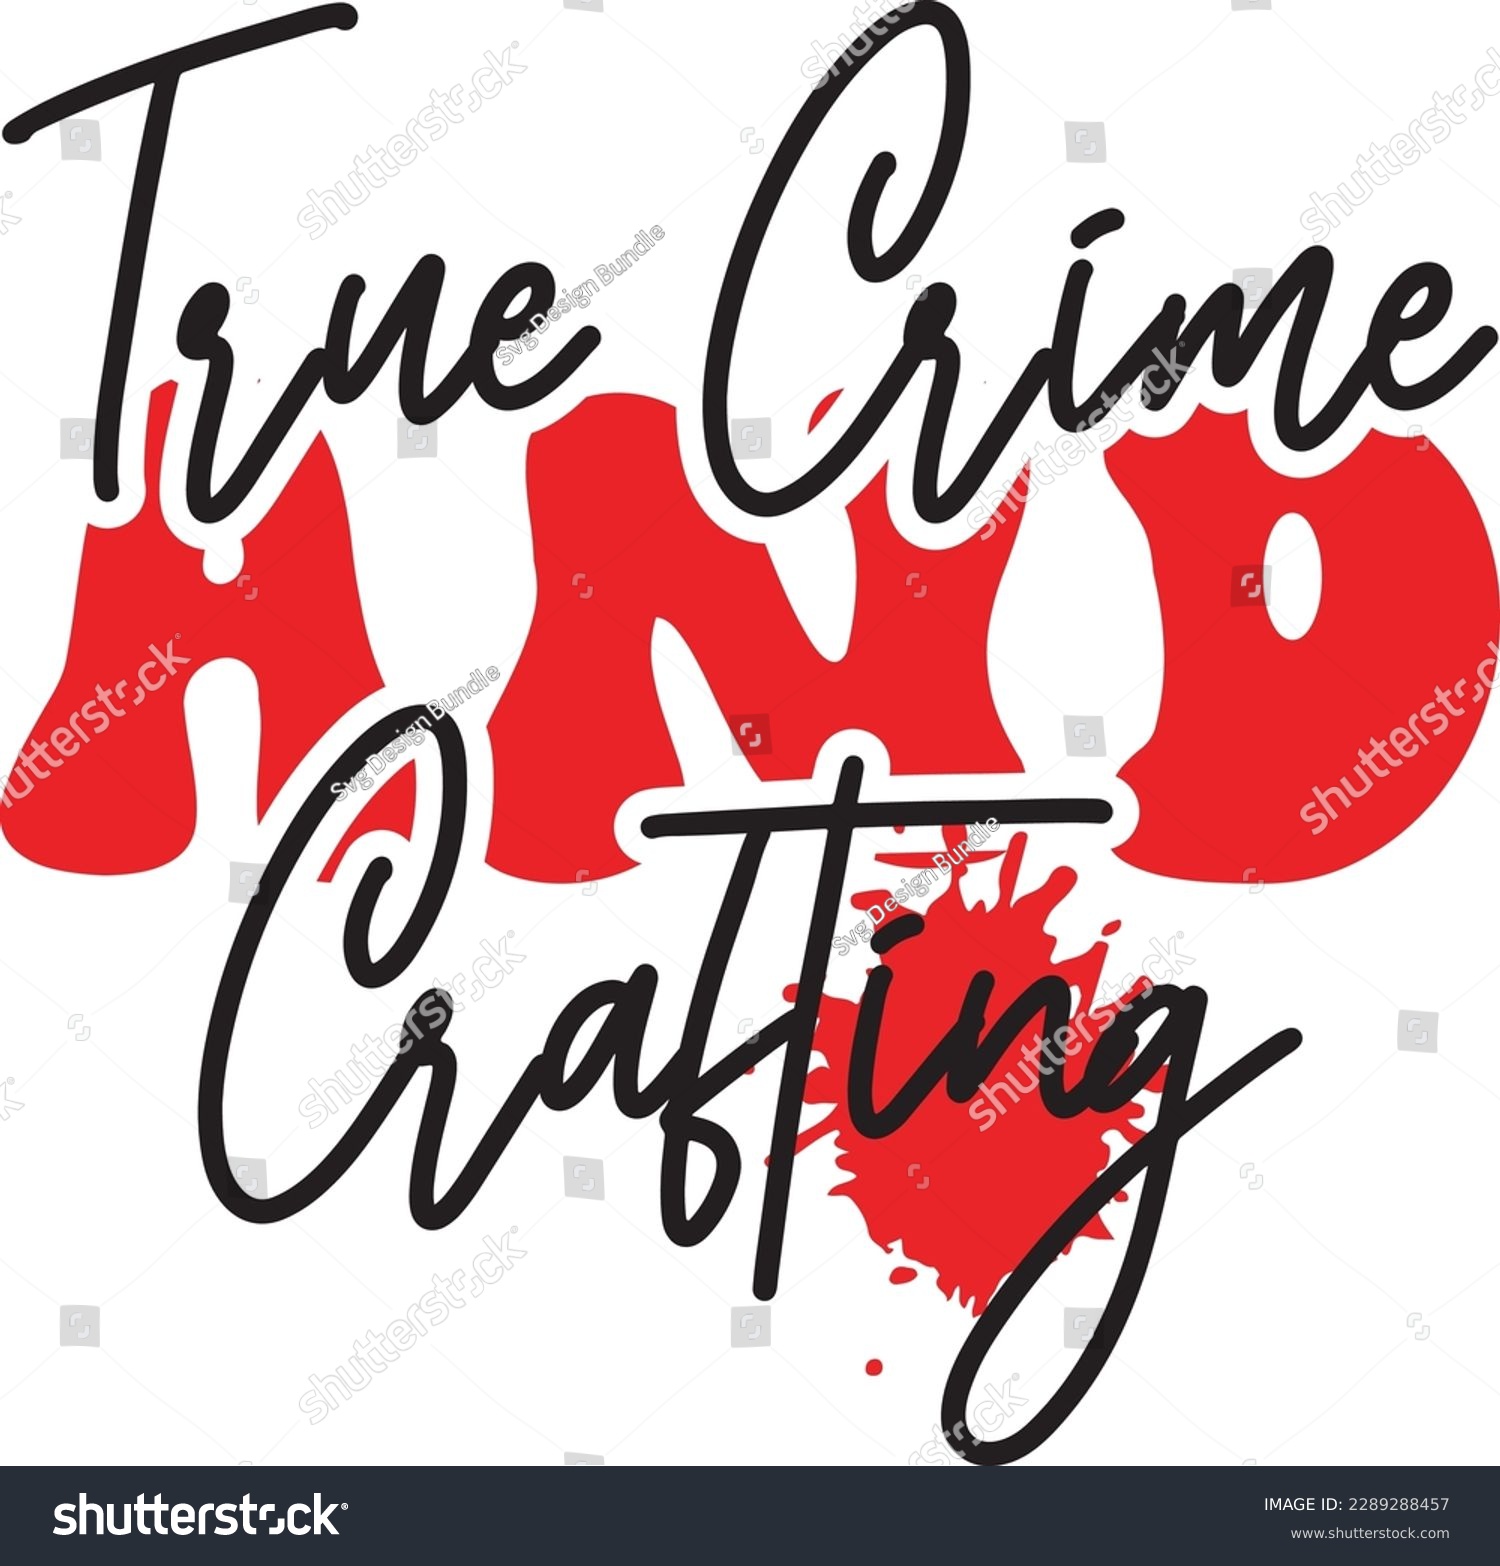 SVG of True Crime and Crafting svg ,Crime svg Design, Crime svg bundle svg